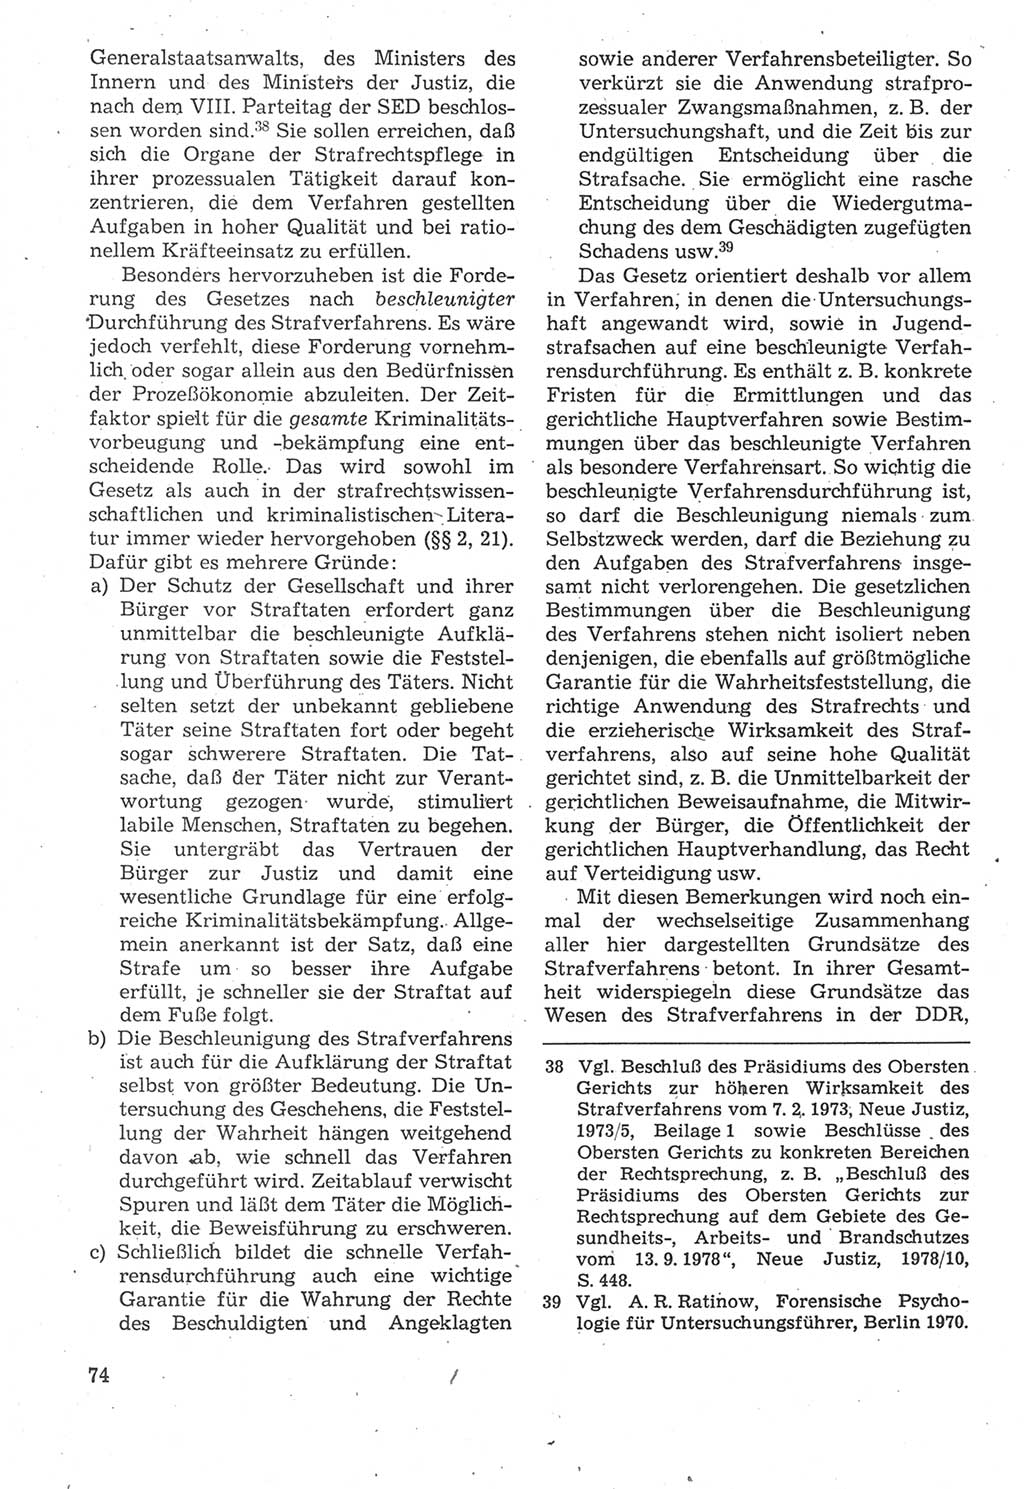 Strafverfahrensrecht [Deutsche Demokratische Republik (DDR)], Lehrbuch 1987, Seite 74 (Strafverf.-R. DDR Lb. 1987, S. 74)